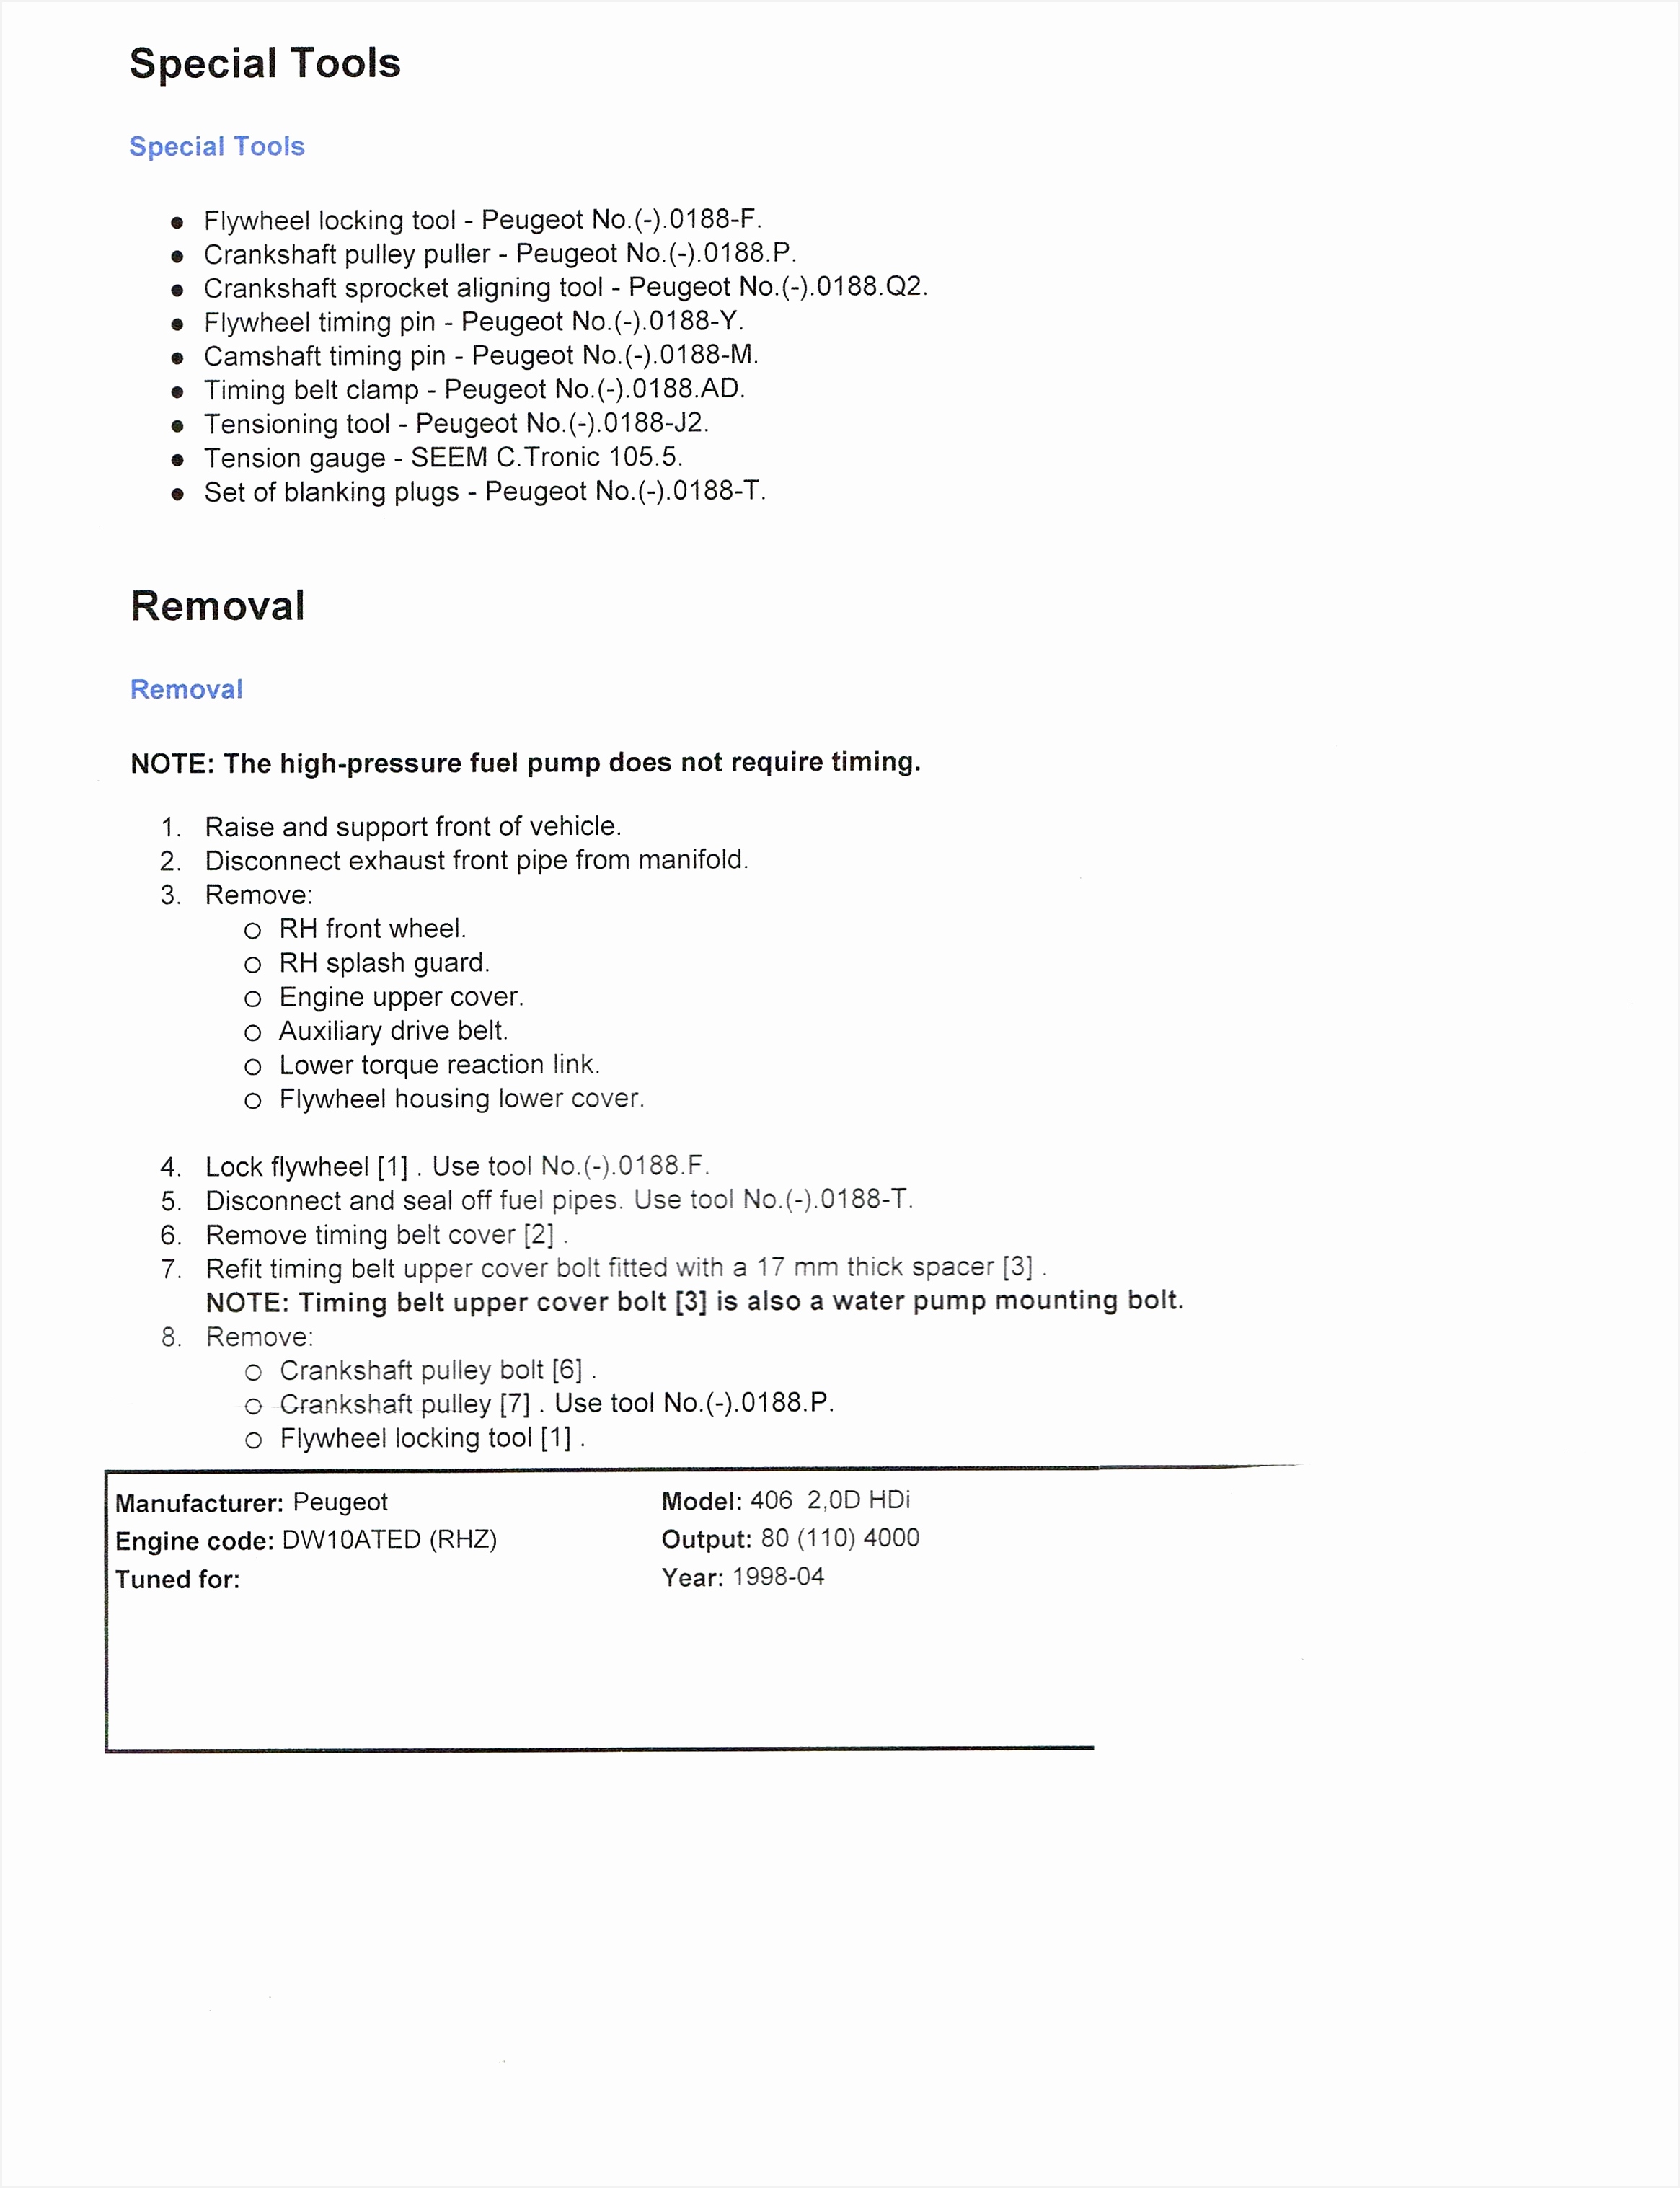 Elegant 50 Basic Resume format Tips for Writing A Resume emsturs 30352330jjhpt